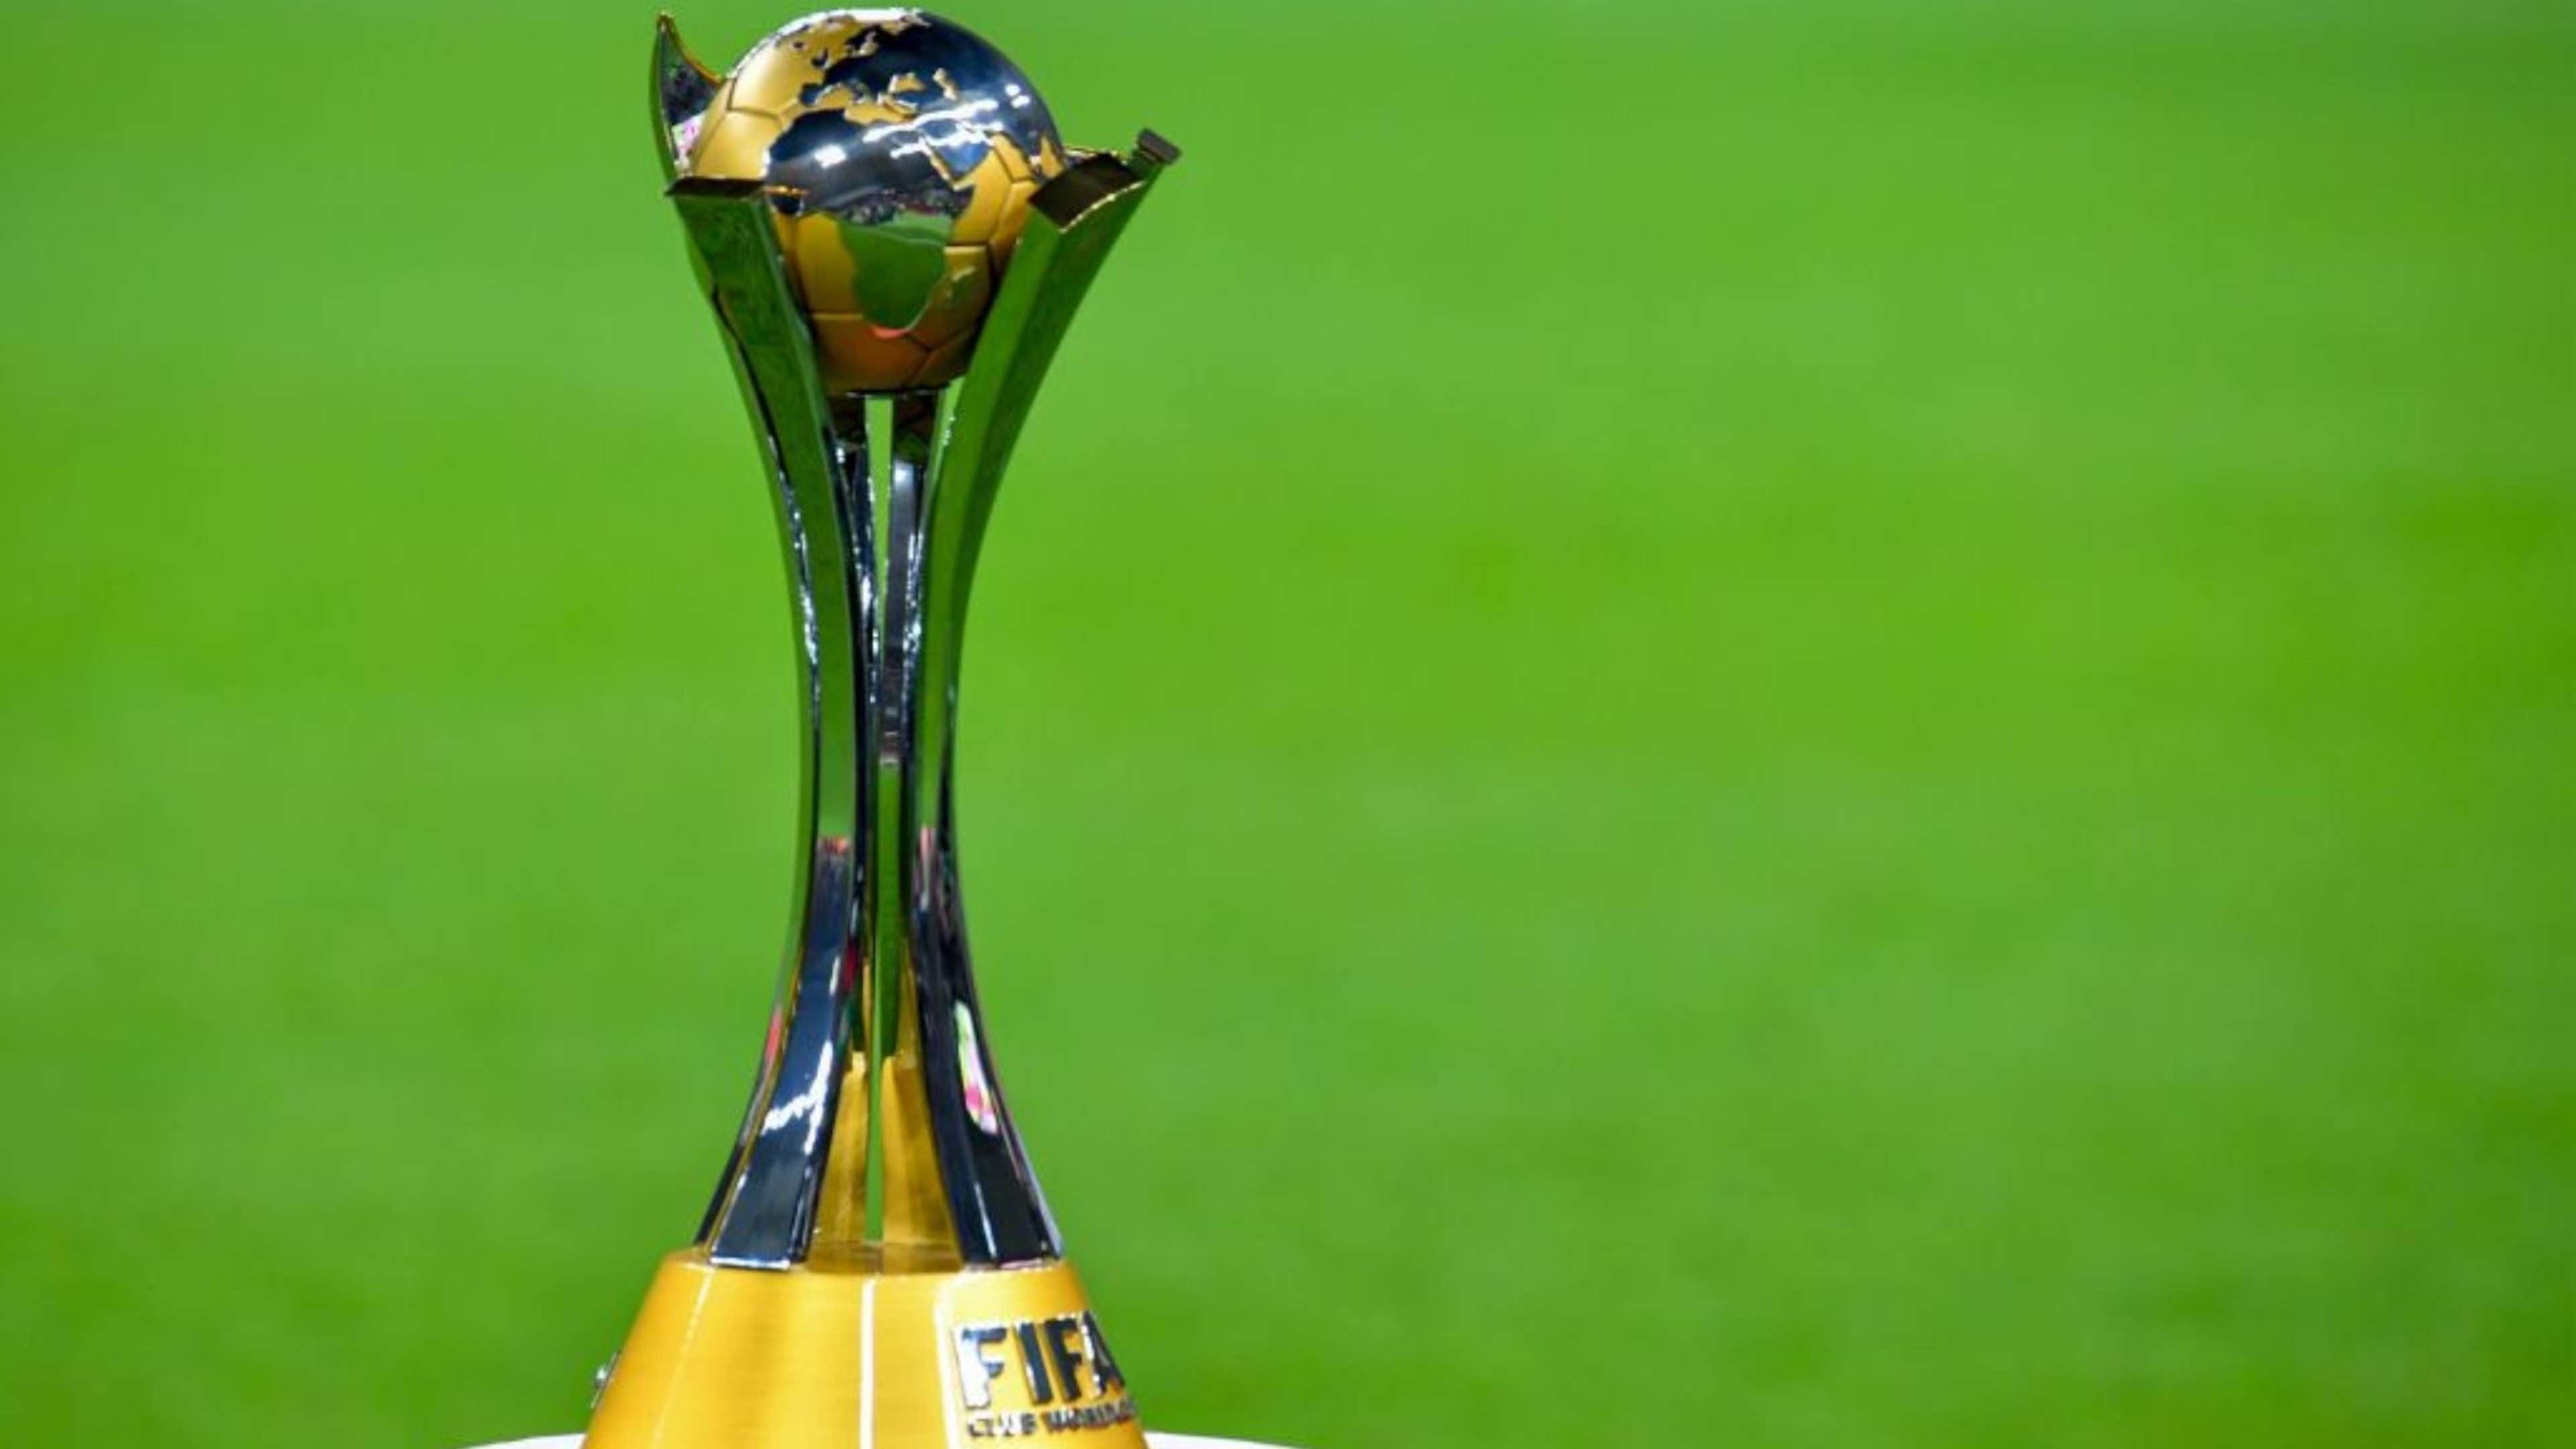 De qué está hecho el trofeo de la FIFA?